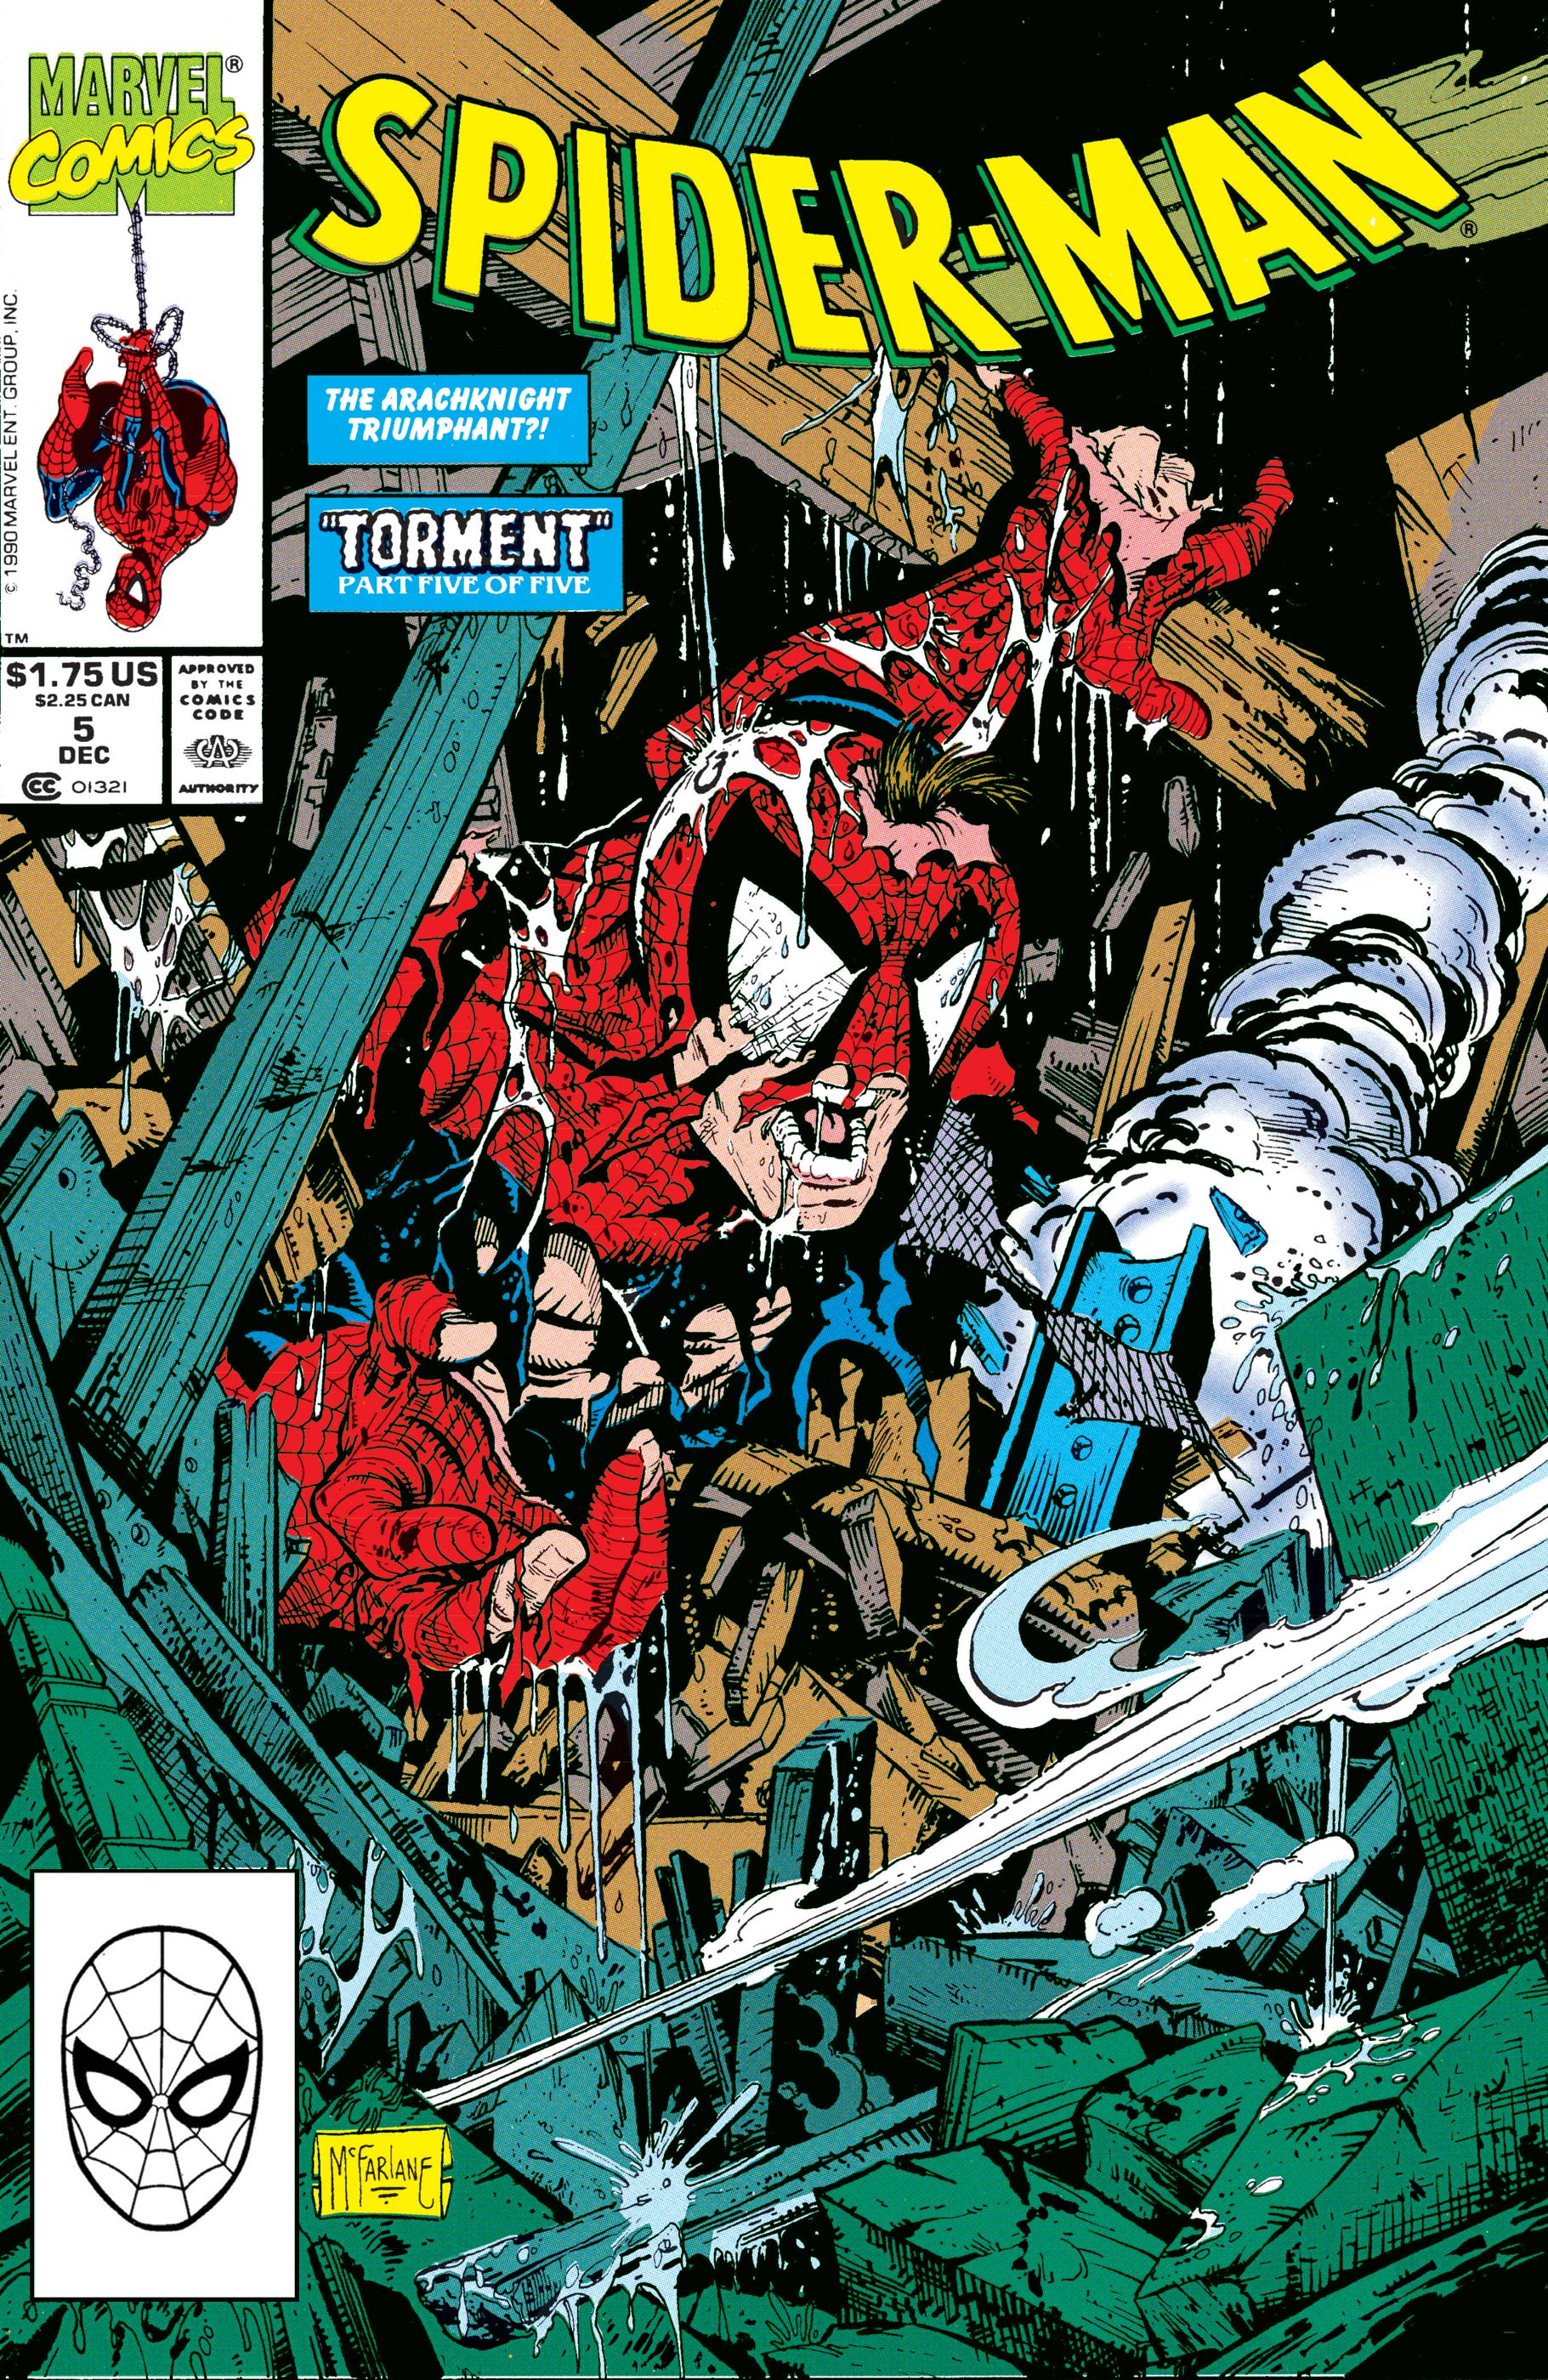 Spider-Man Vol 1 5 | Marvel Database | Fandom